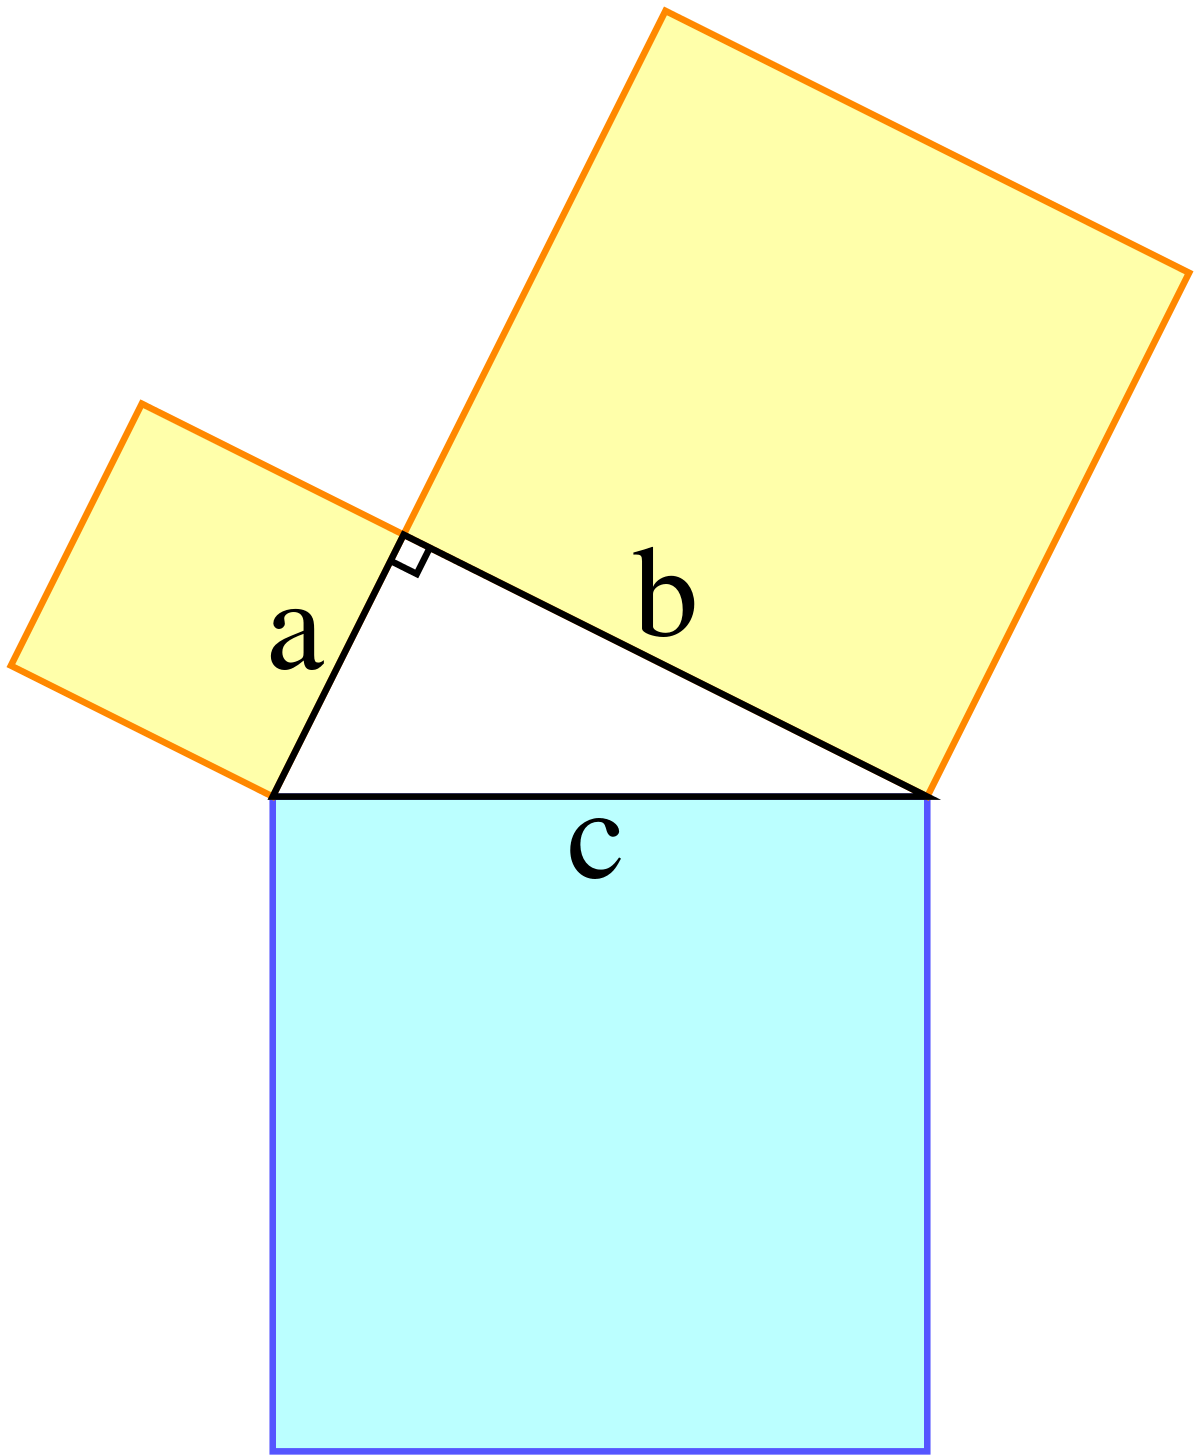 teorema de Pitágoras - Série 10 - Questionário